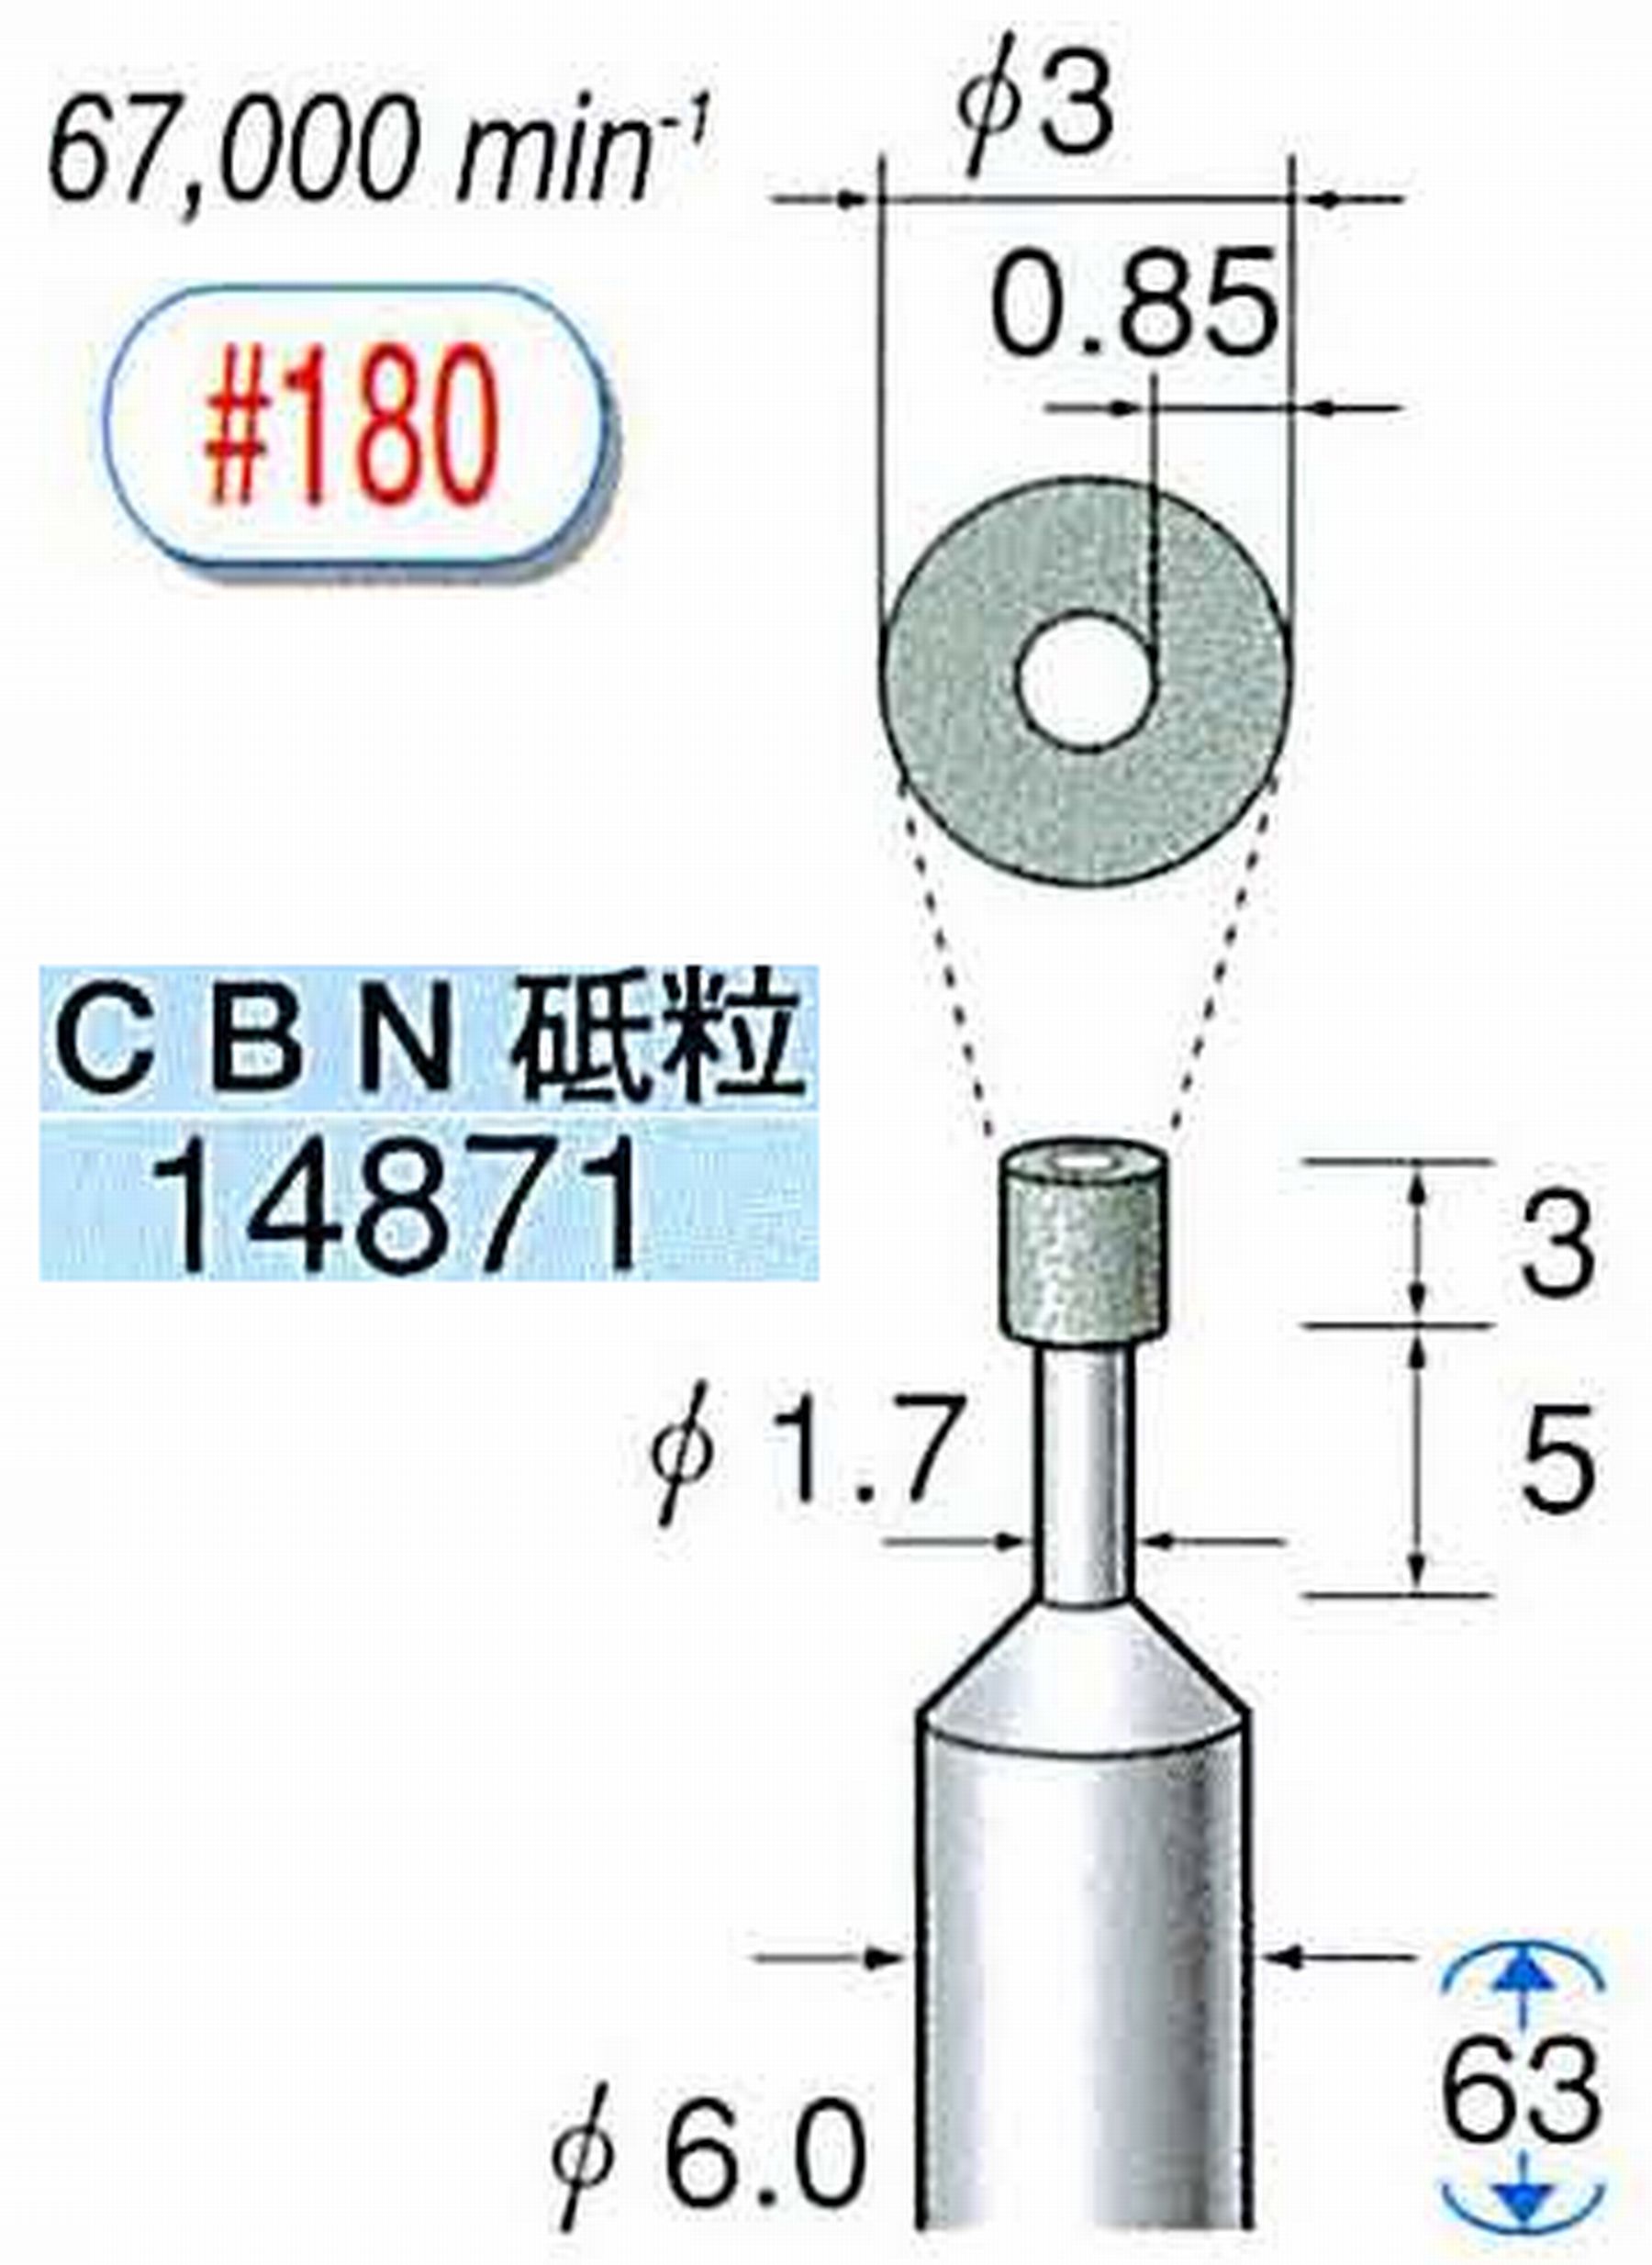 ナカニシ/NAKANISHI ビトリファイドダイヤモンド砥石 CBN砥粒 軸径(シャンク)φ6.0mm 14871